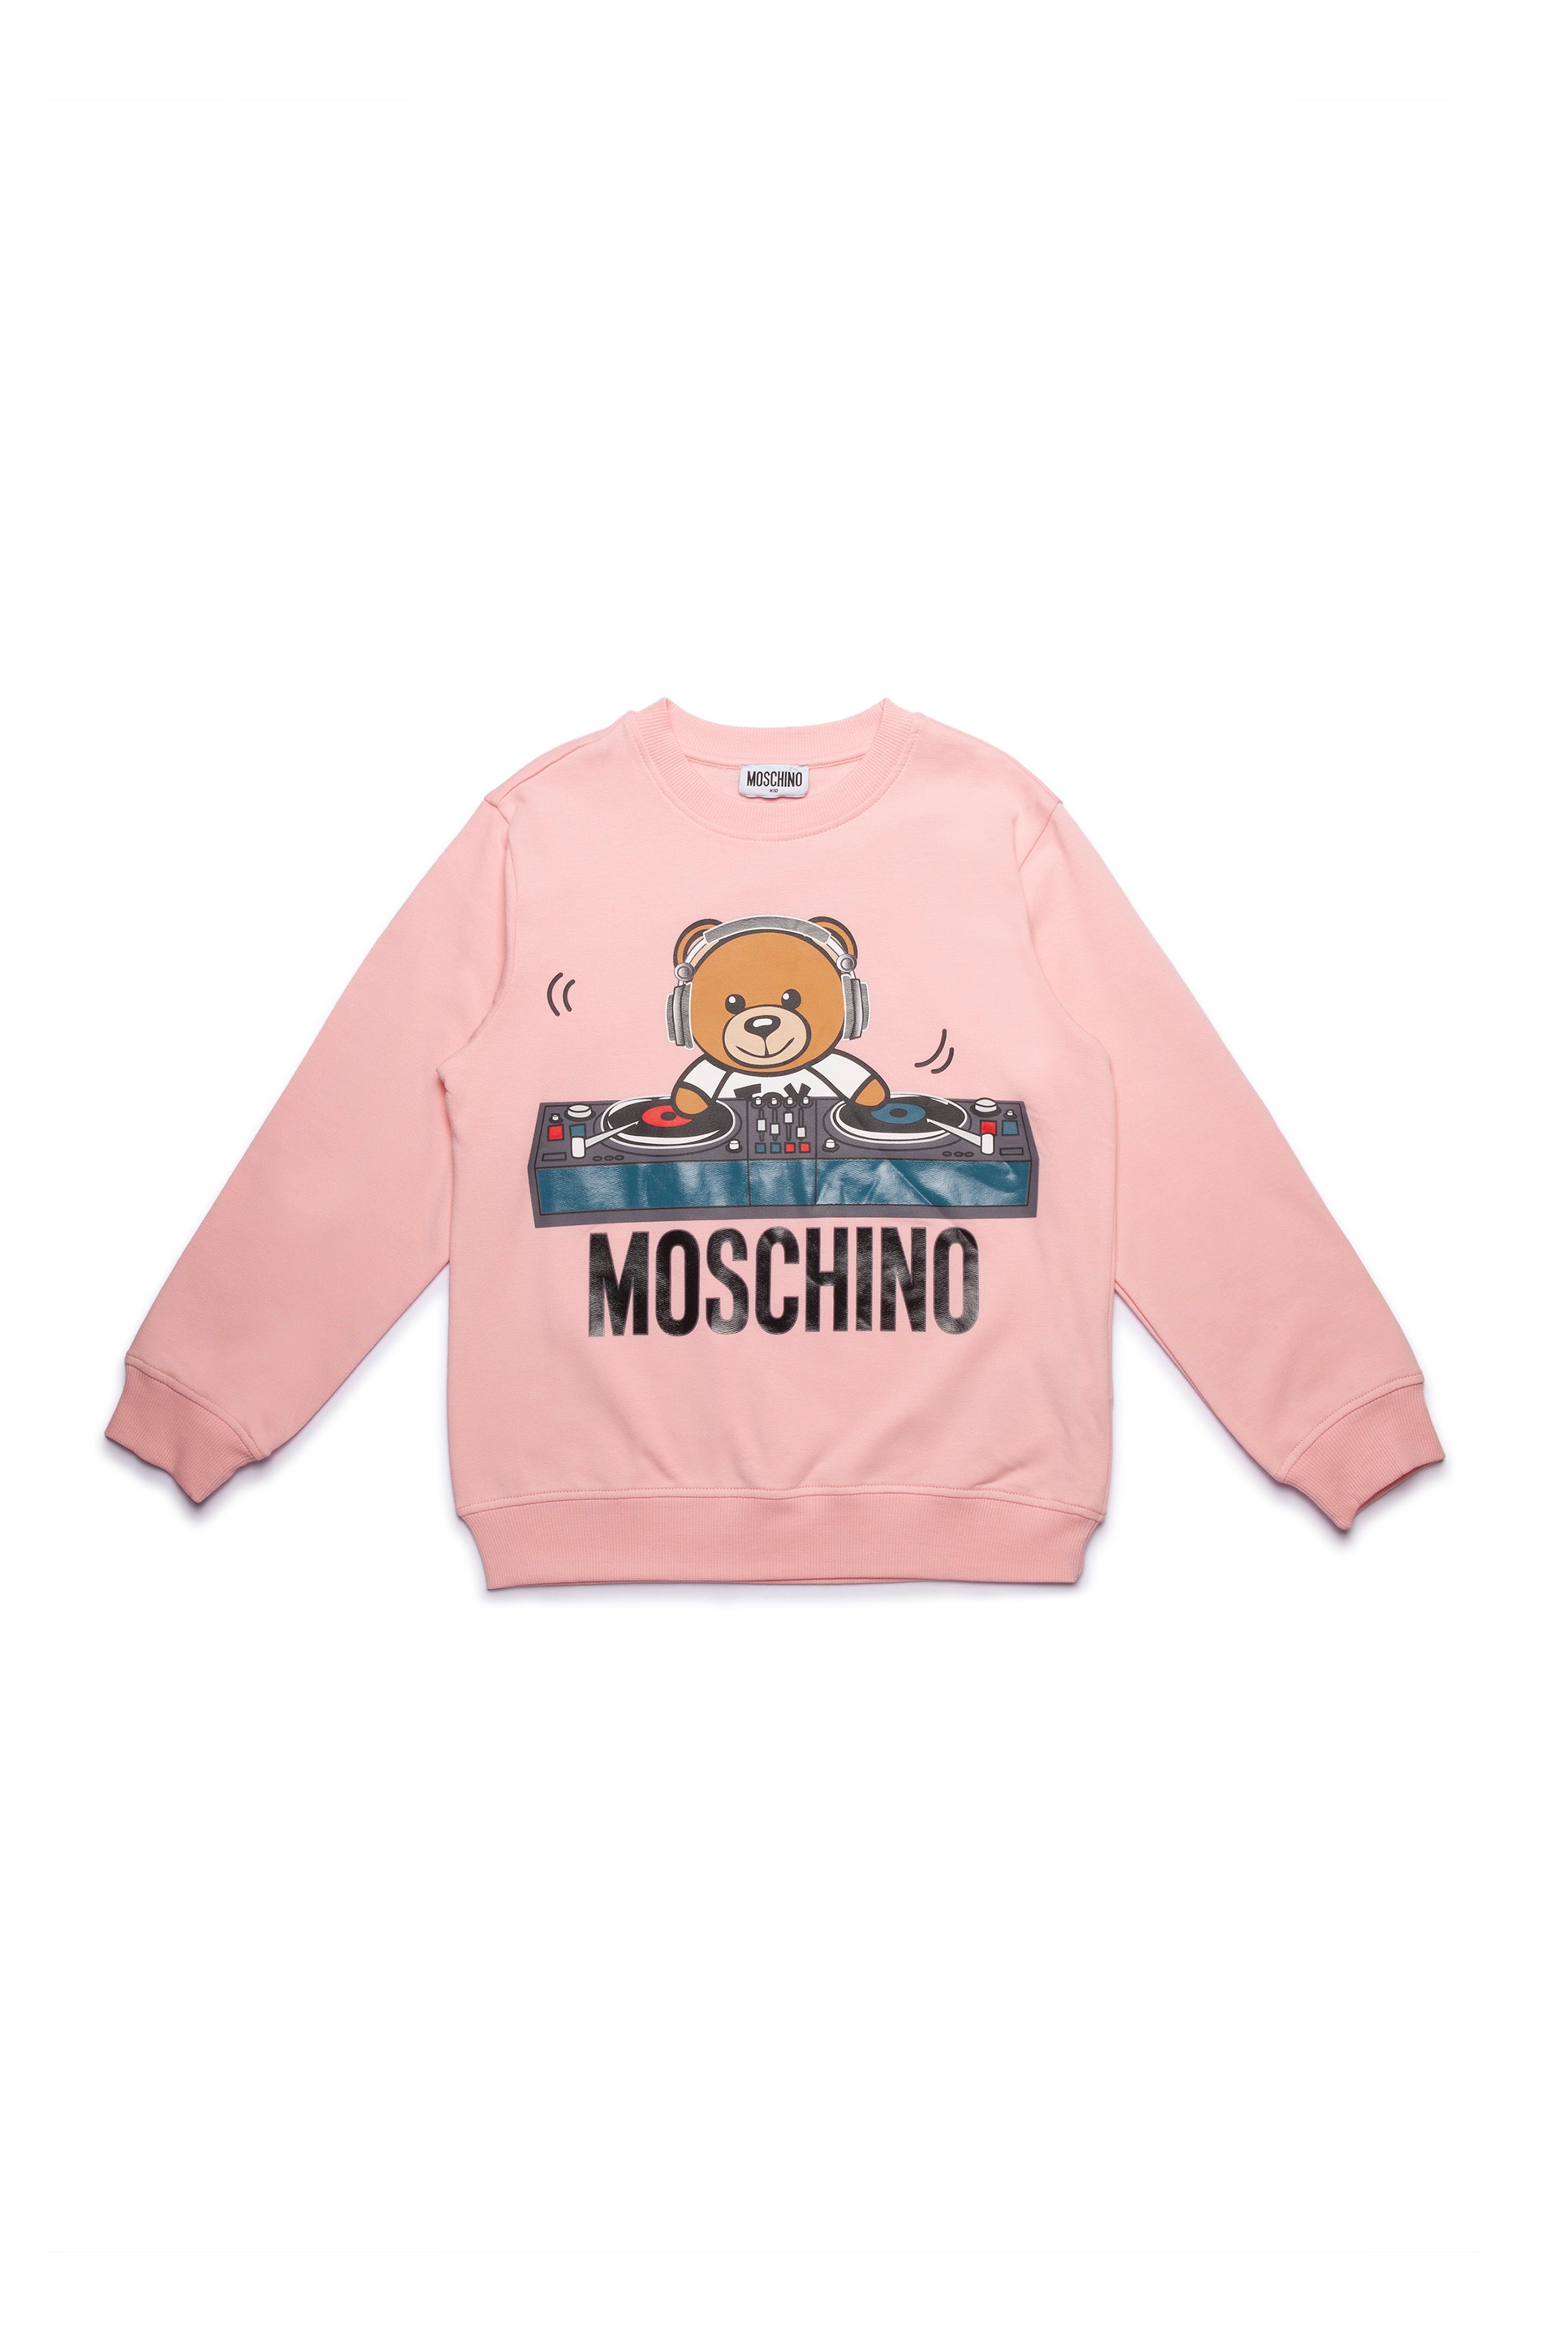 Girls Pink Printing Cotton Sweatshirt